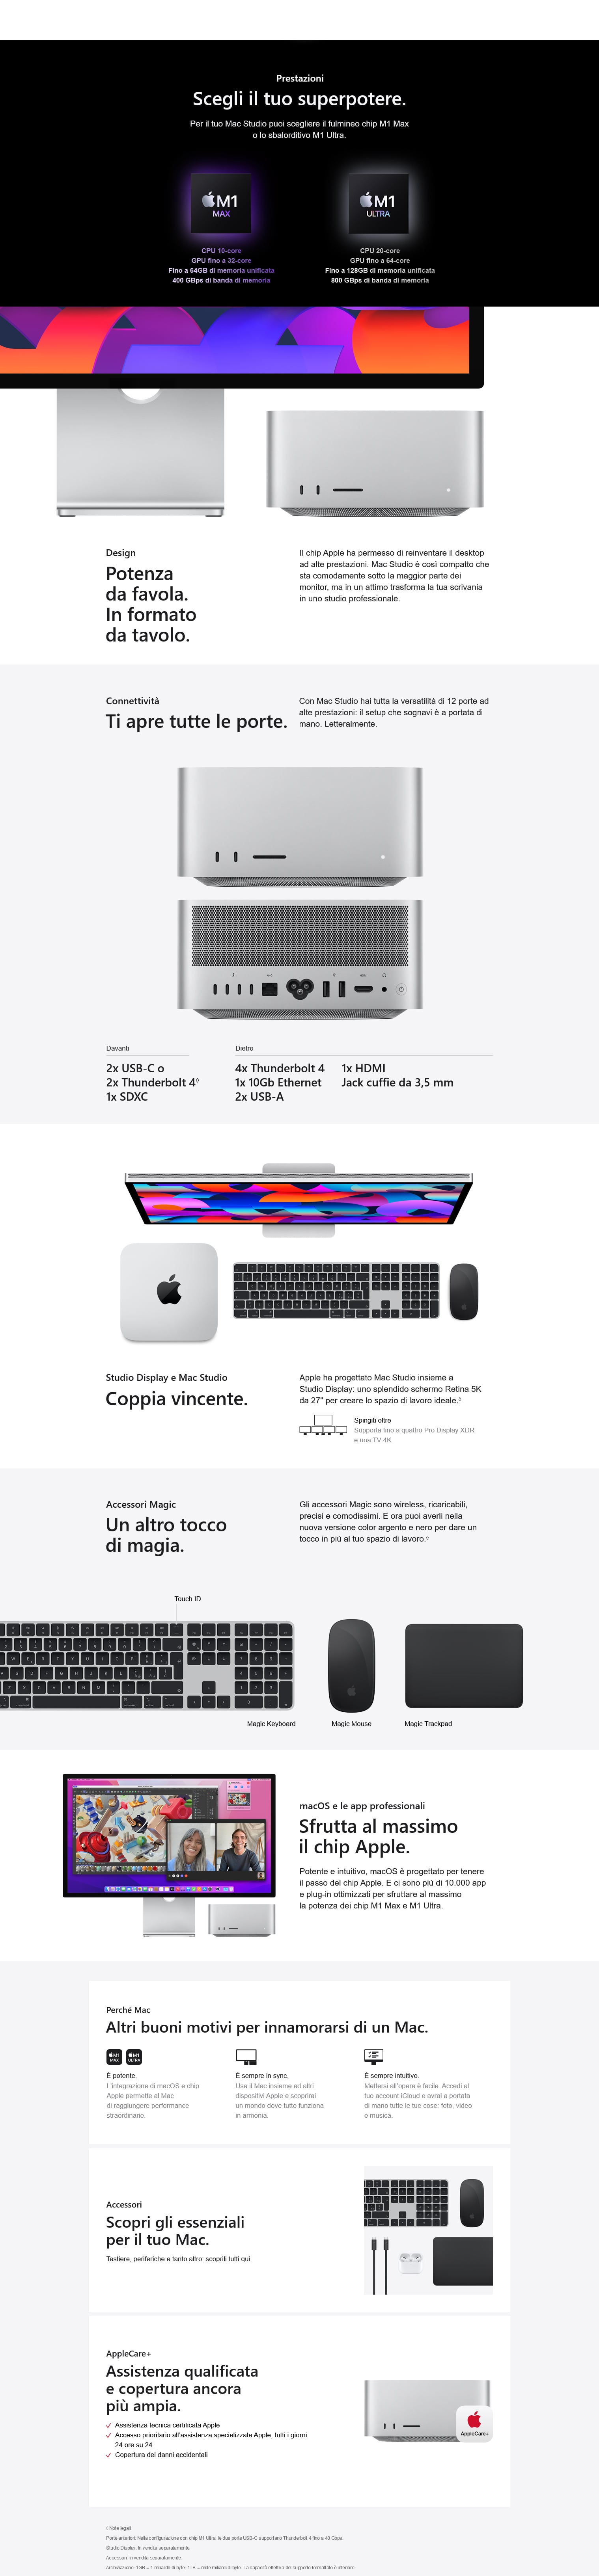 mac studio apple apple 4